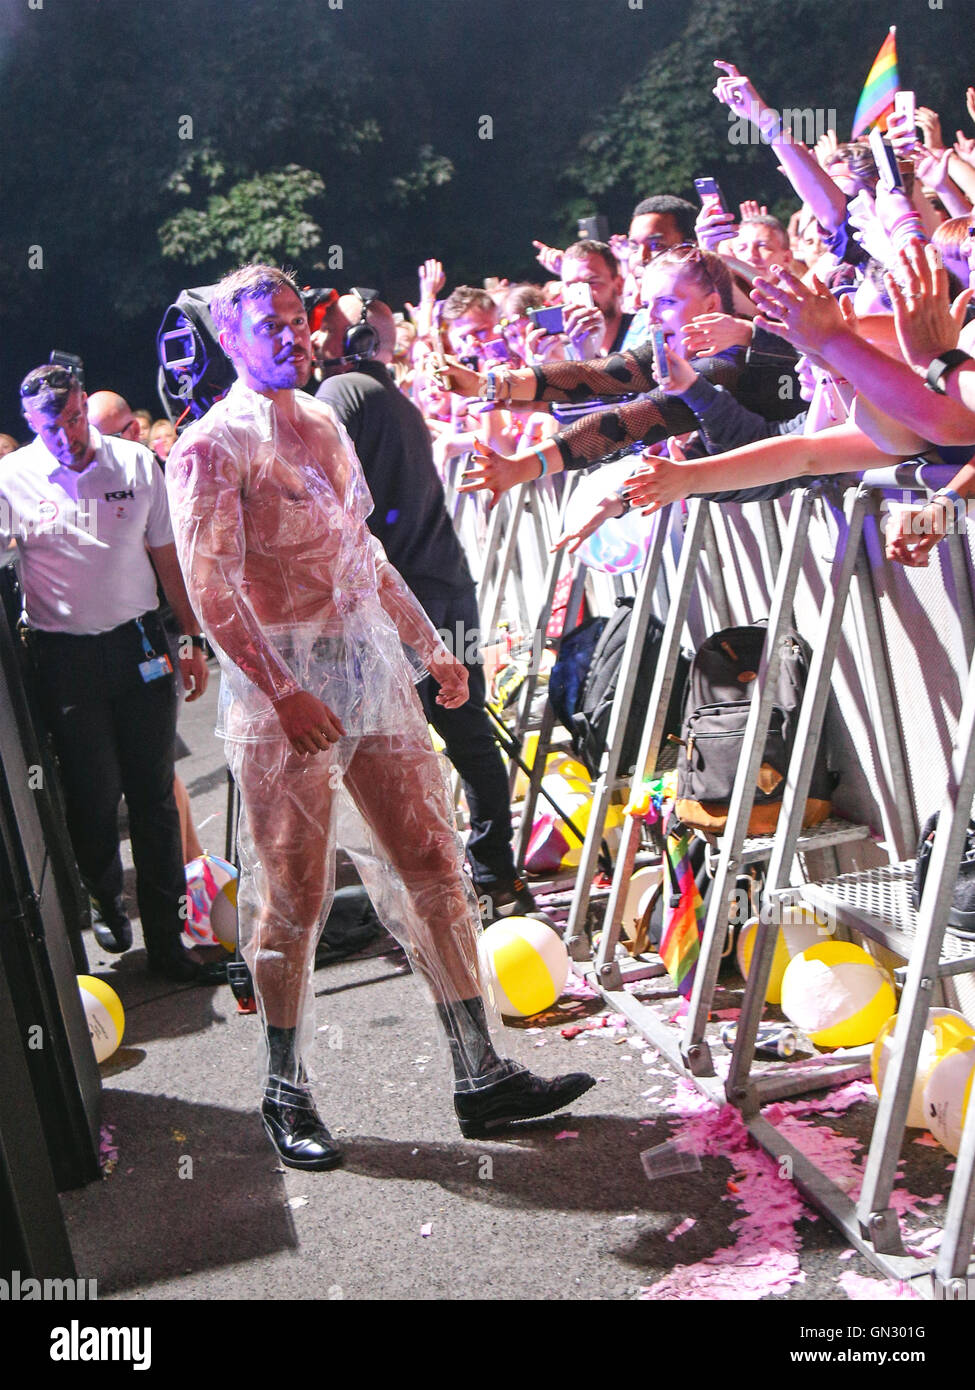 Will Young schließt sich das Publikum im Rahmen seines Auftritts beim "The Big Weekend" für Manchester stolz. Stockfoto